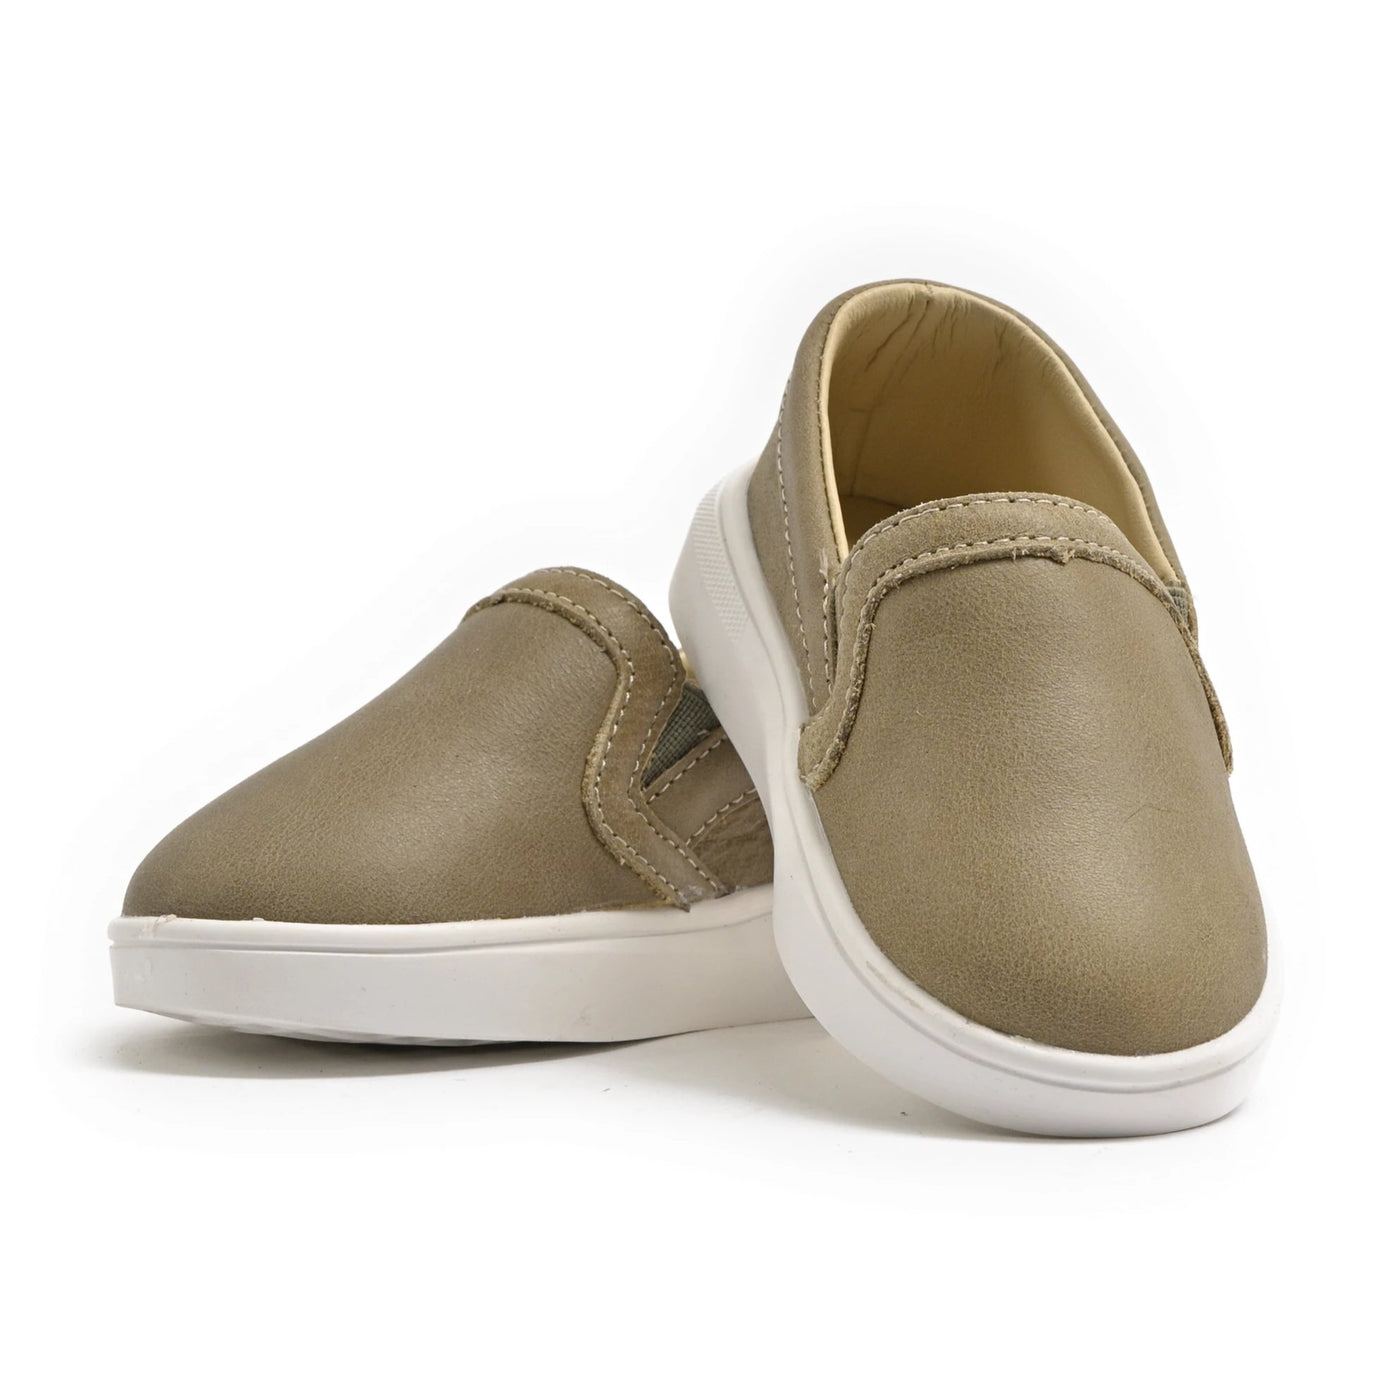 Piper Finn - Baby & Toddler Shoes - Slip On Sneaker - Olive – Piper finn